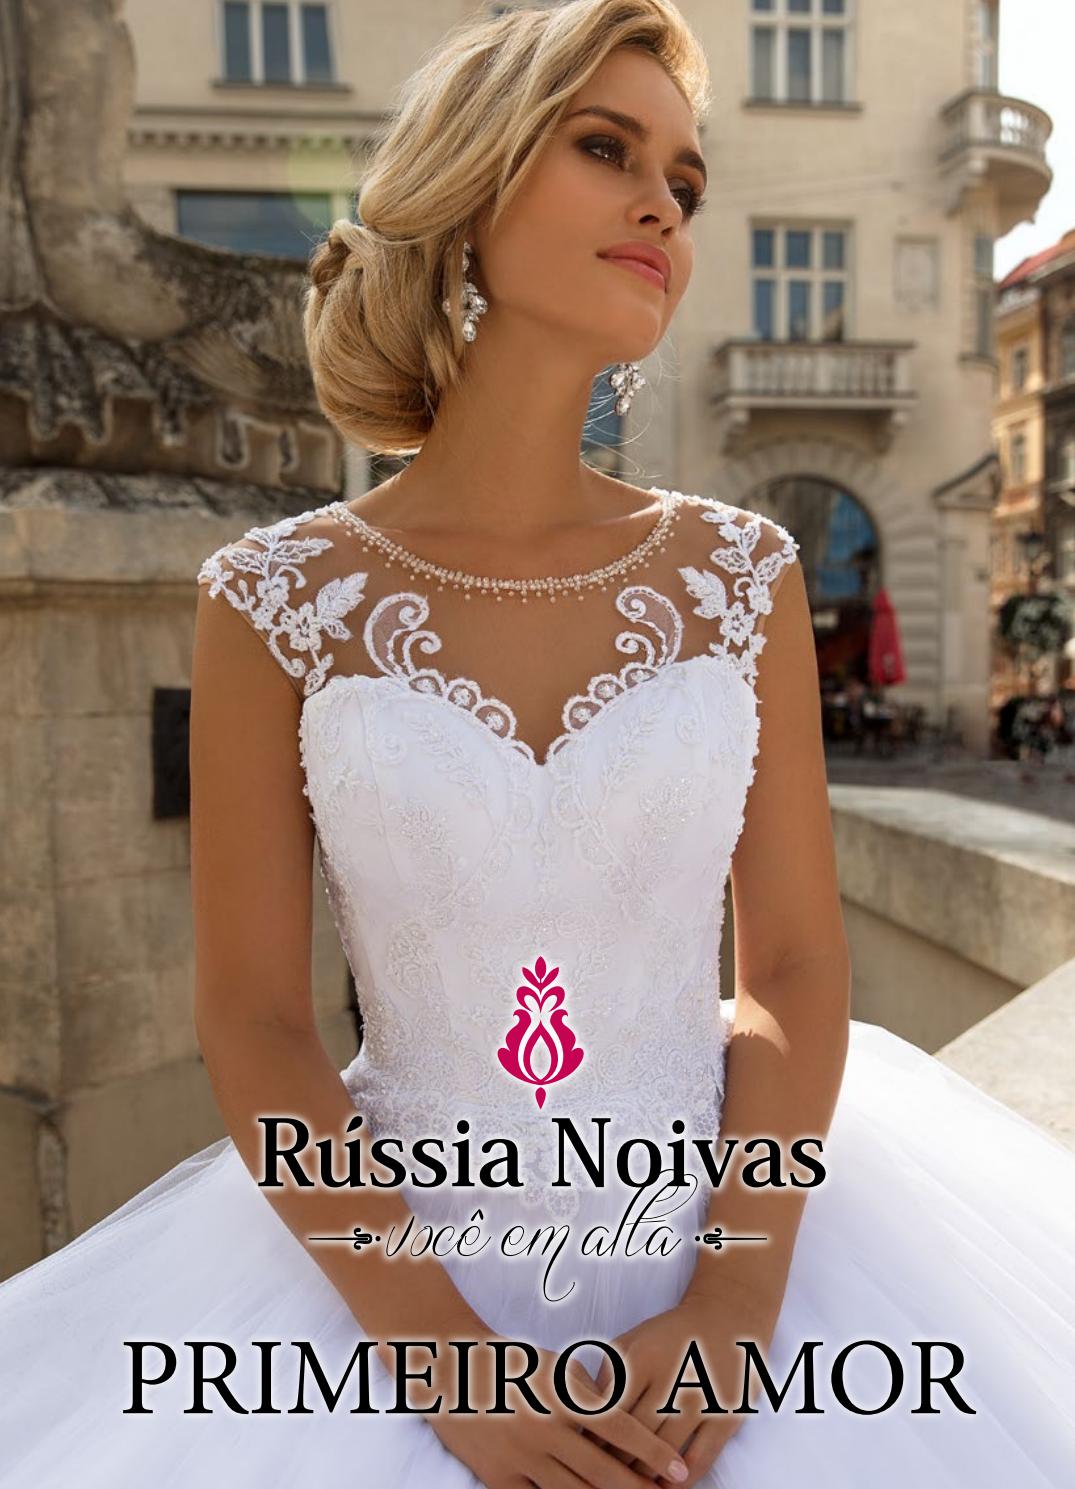 俄罗斯婚纱礼服设计画册/素材/书籍/目录/杂志/婚纱礼服设计品牌有哪些/Russia Noivas2019图片